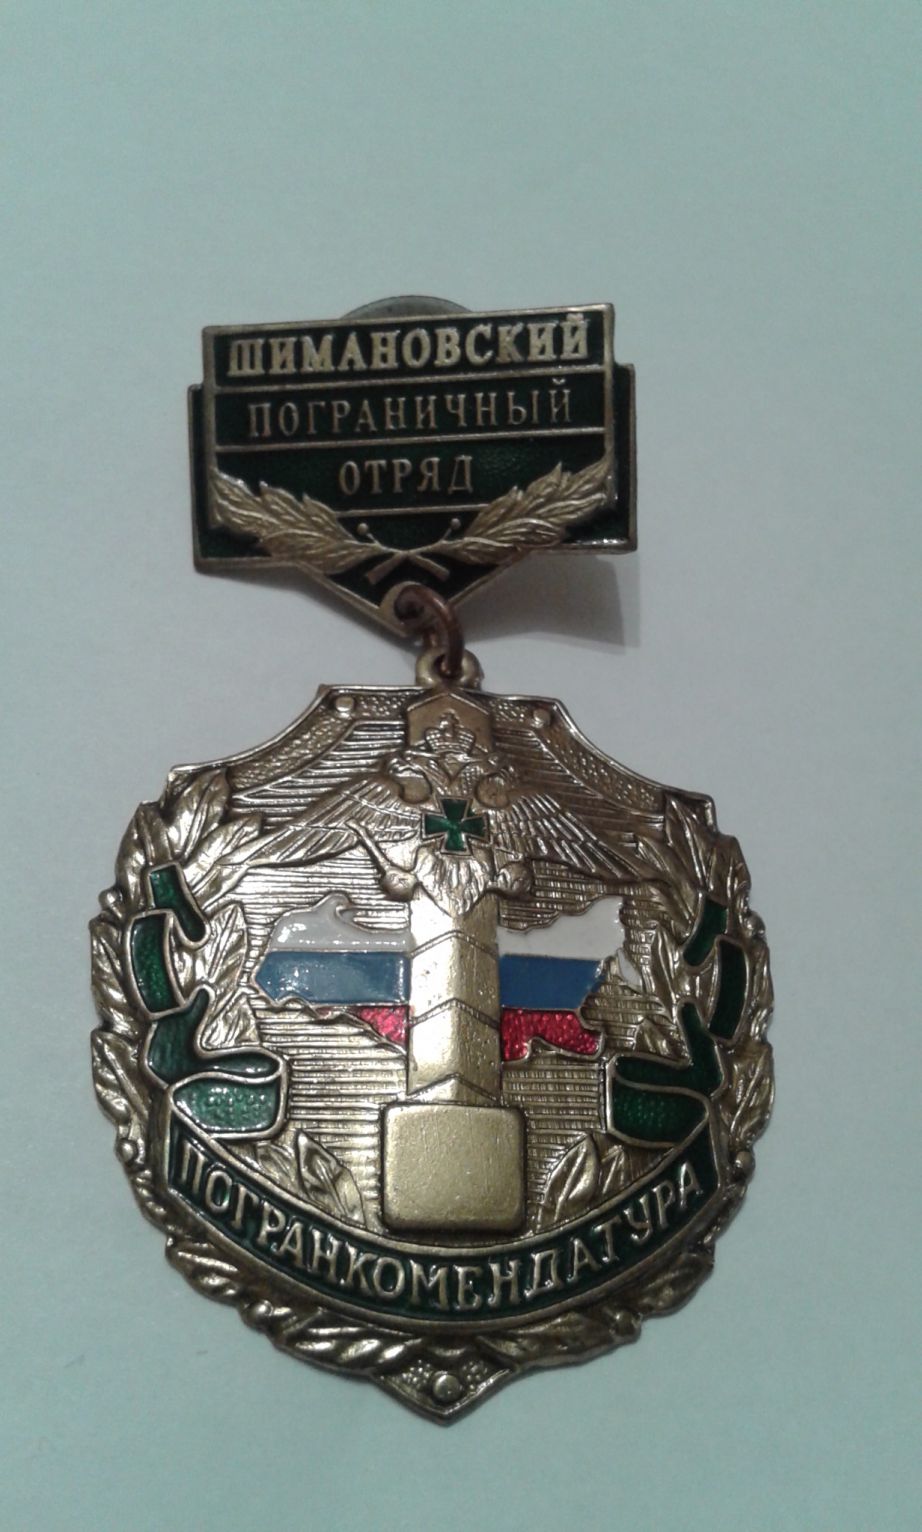 Нагрудный знак "Шимановский пограничный отряд"